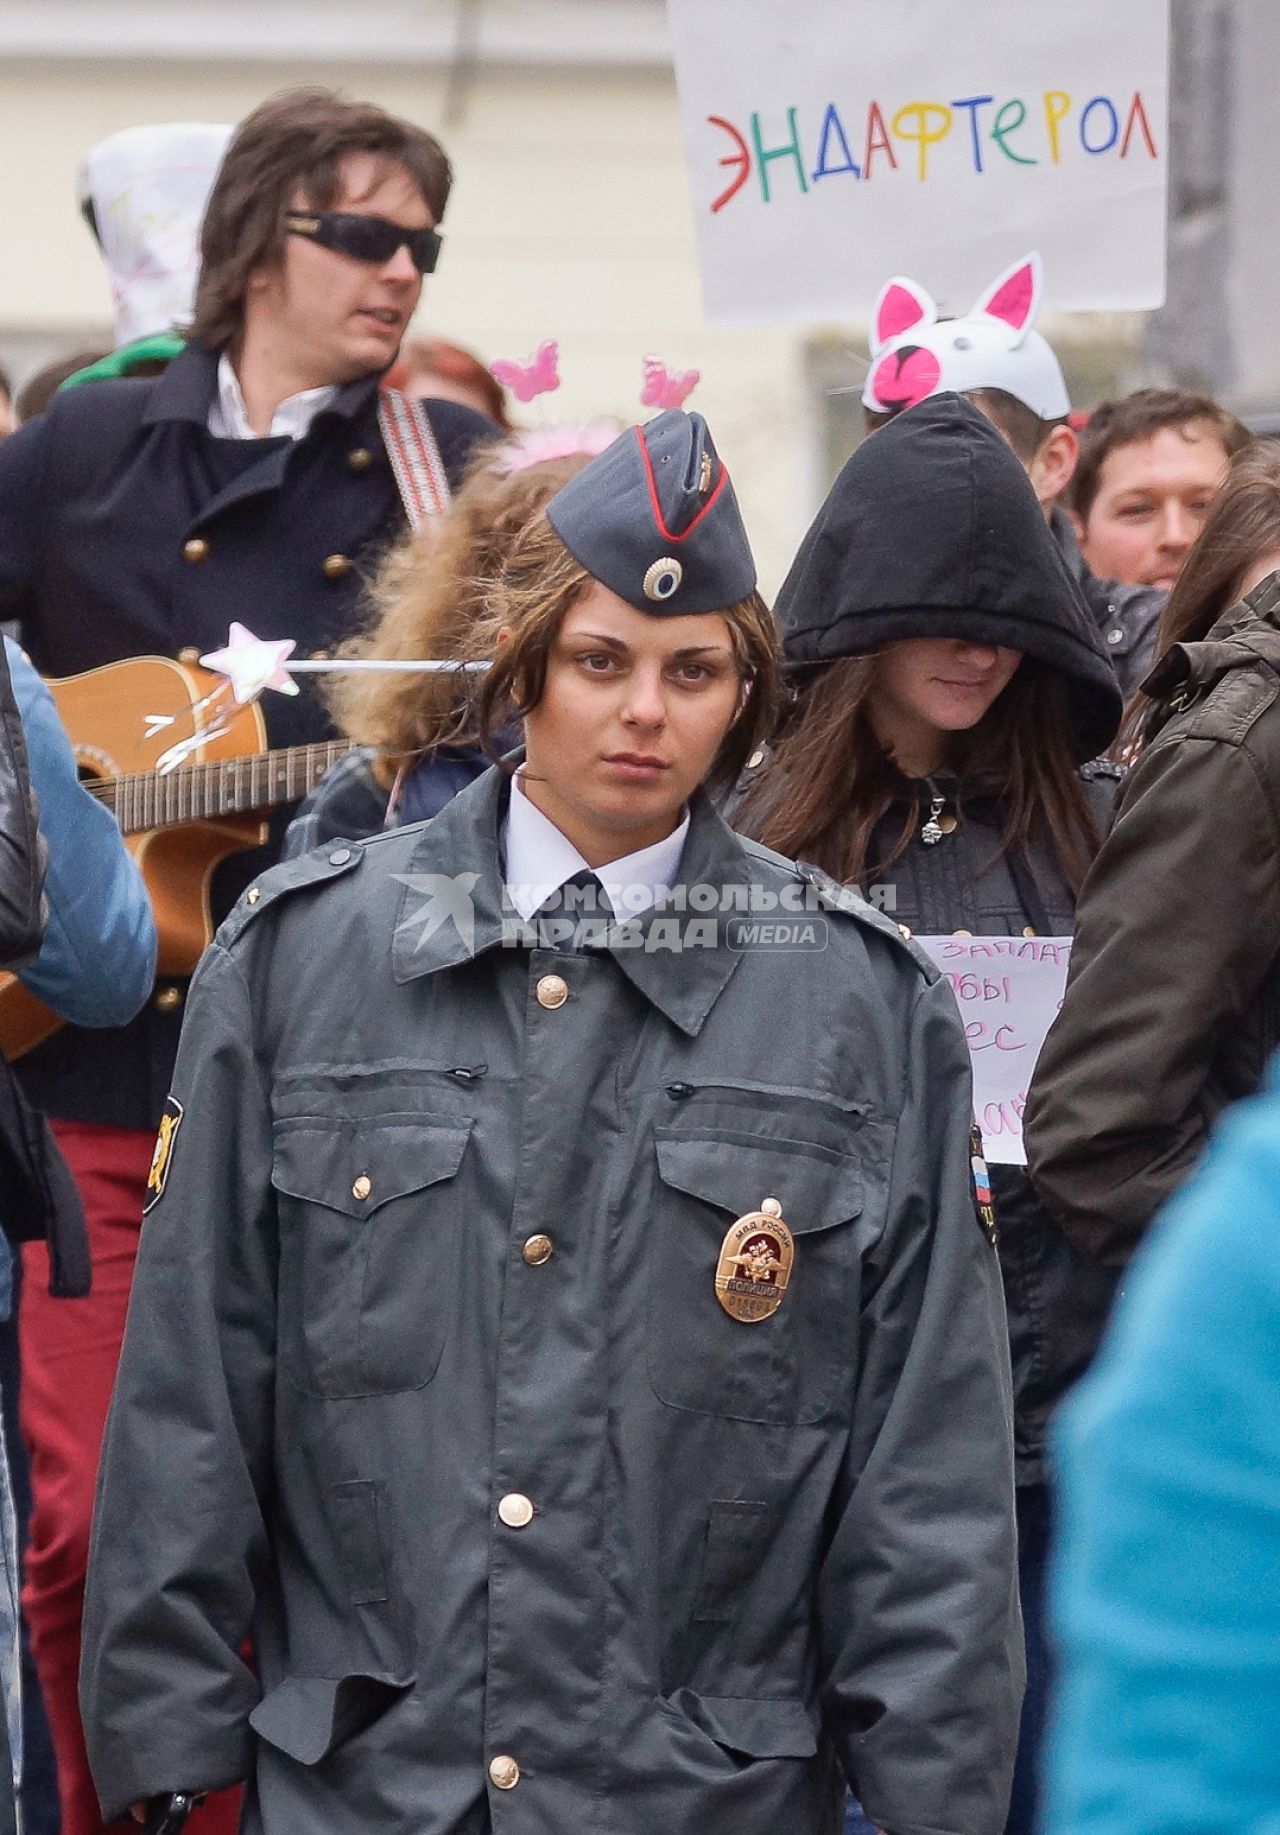 Празднование 1 мая в Екатеринбурге. На снимке: девушка полицейский.